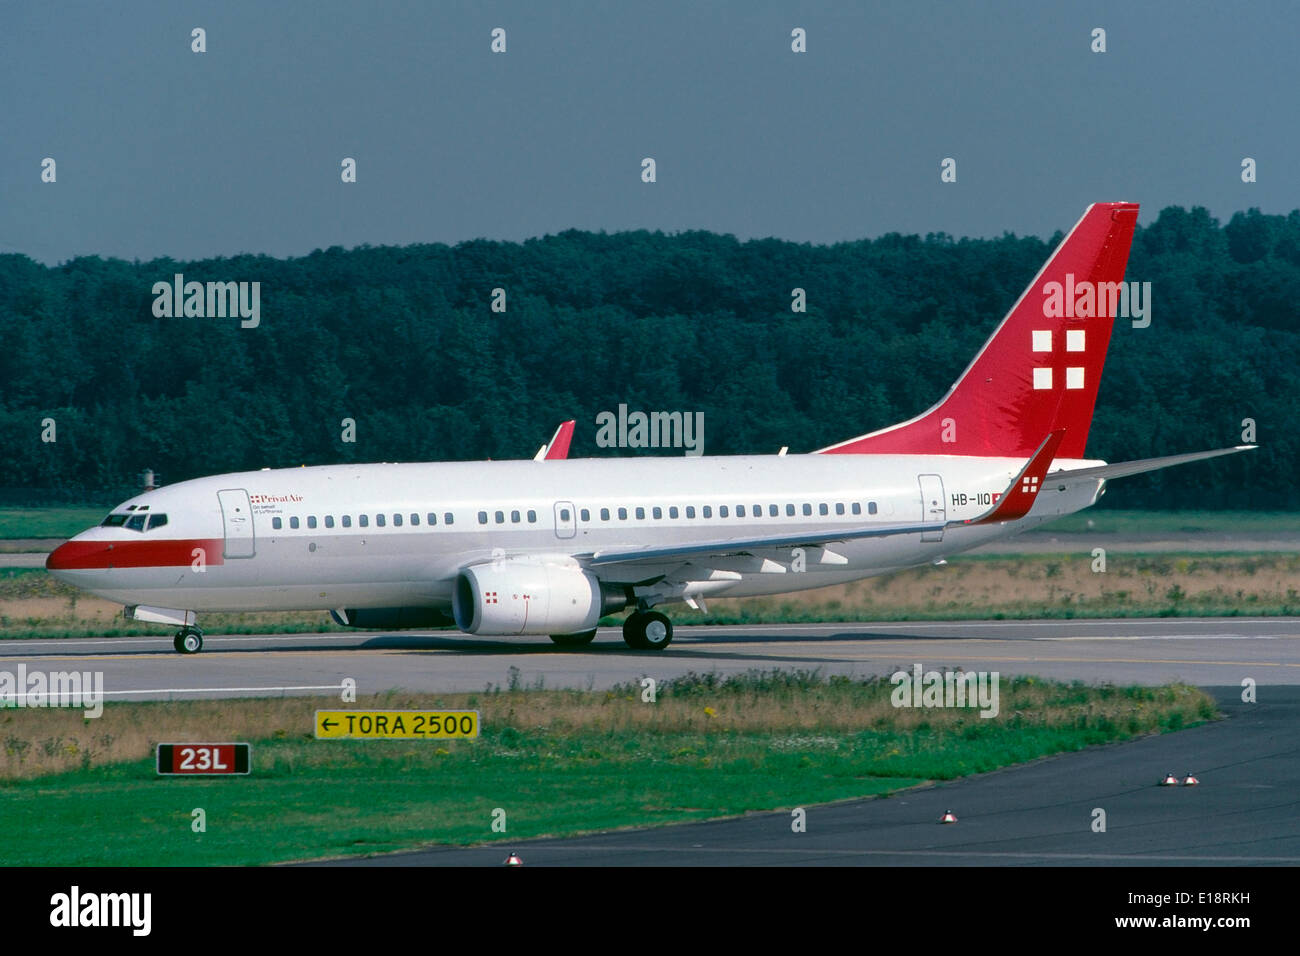 Ein Passagierflugzeug Boeing 737-700 der Fluggesellschaft Swiss PrivatAir ist bereit für den Abflug Flughafen Düsseldorf-Lohausen, im Namen von Deutsche Lufthansa tätig. Stockfoto